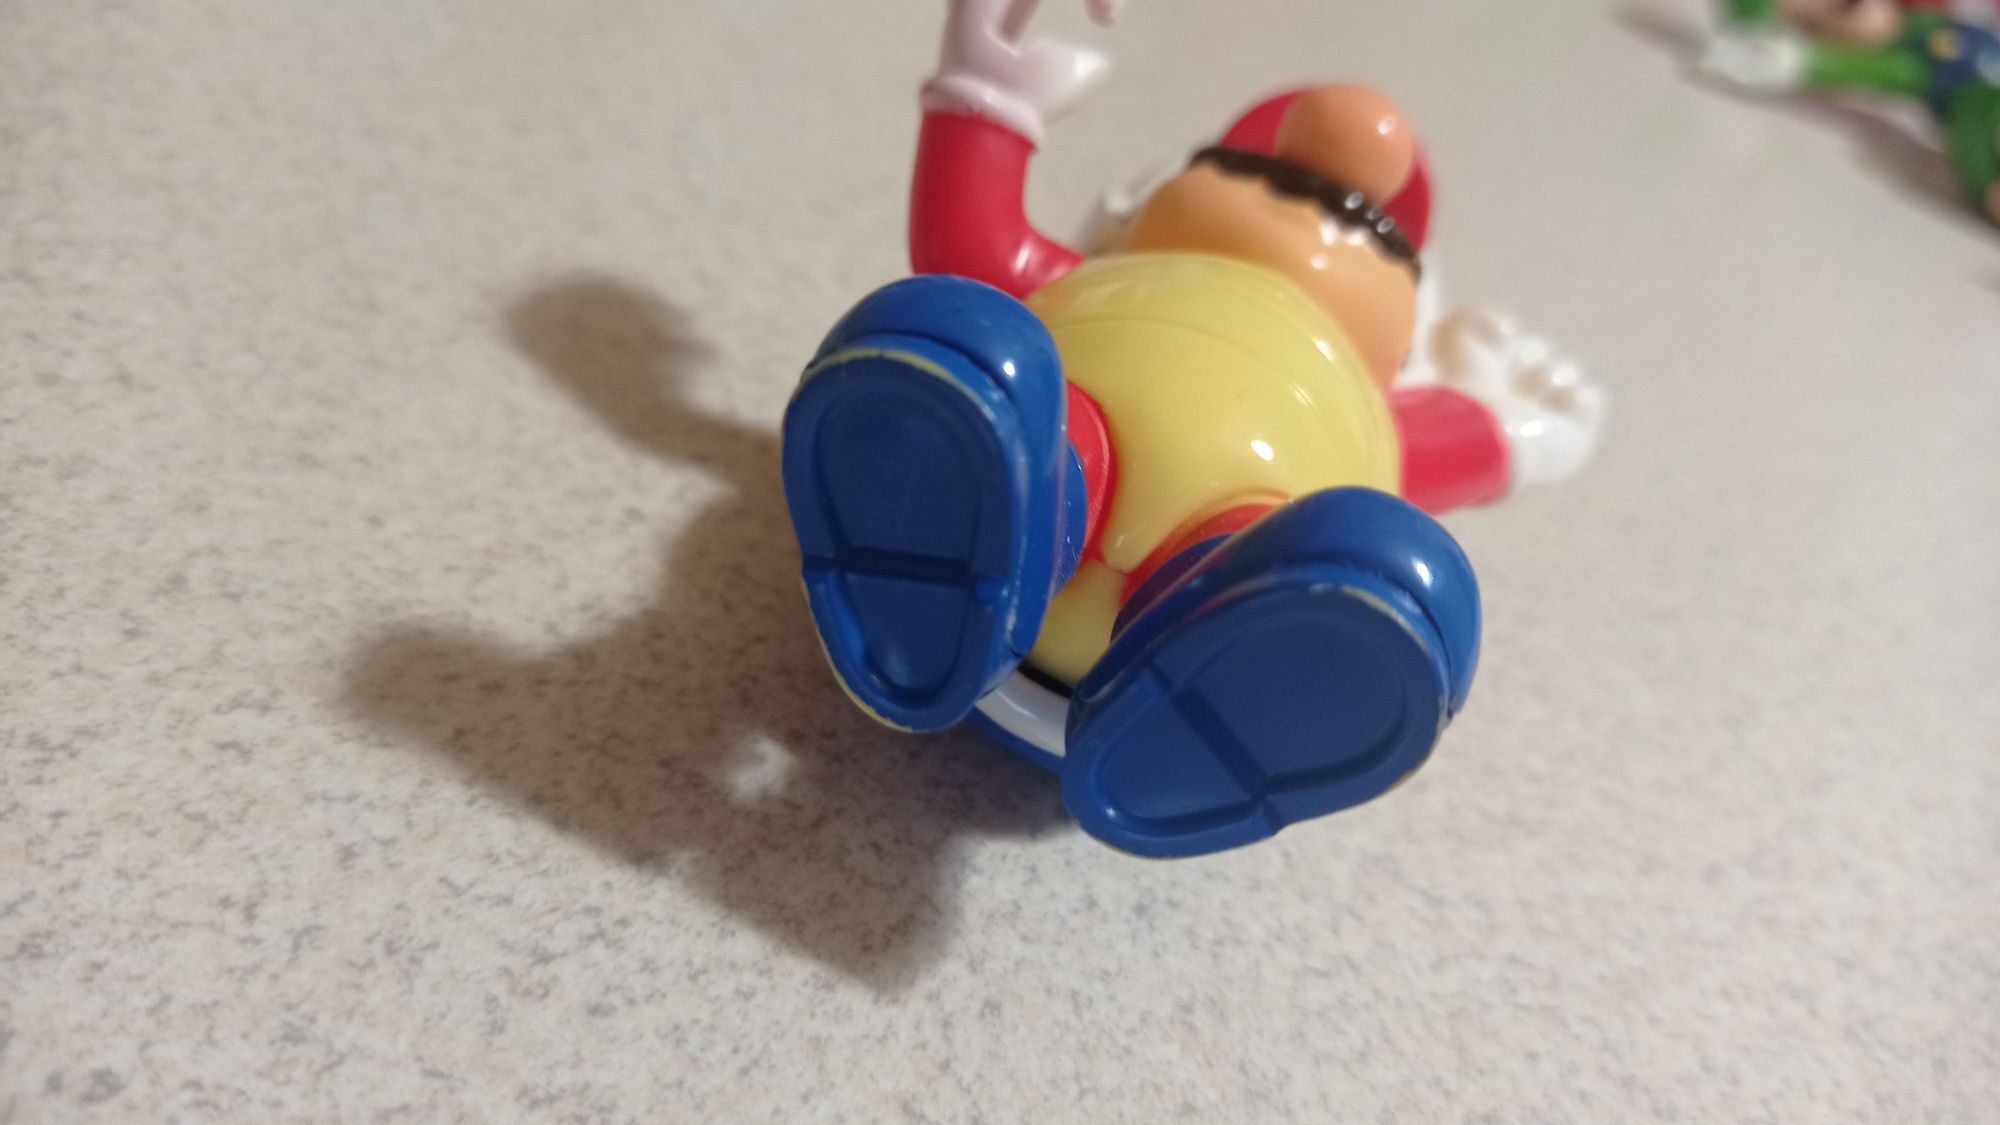 Org. ruchoma figurka Mario żółw 2015 r. / Nintendo Super Mario Bros